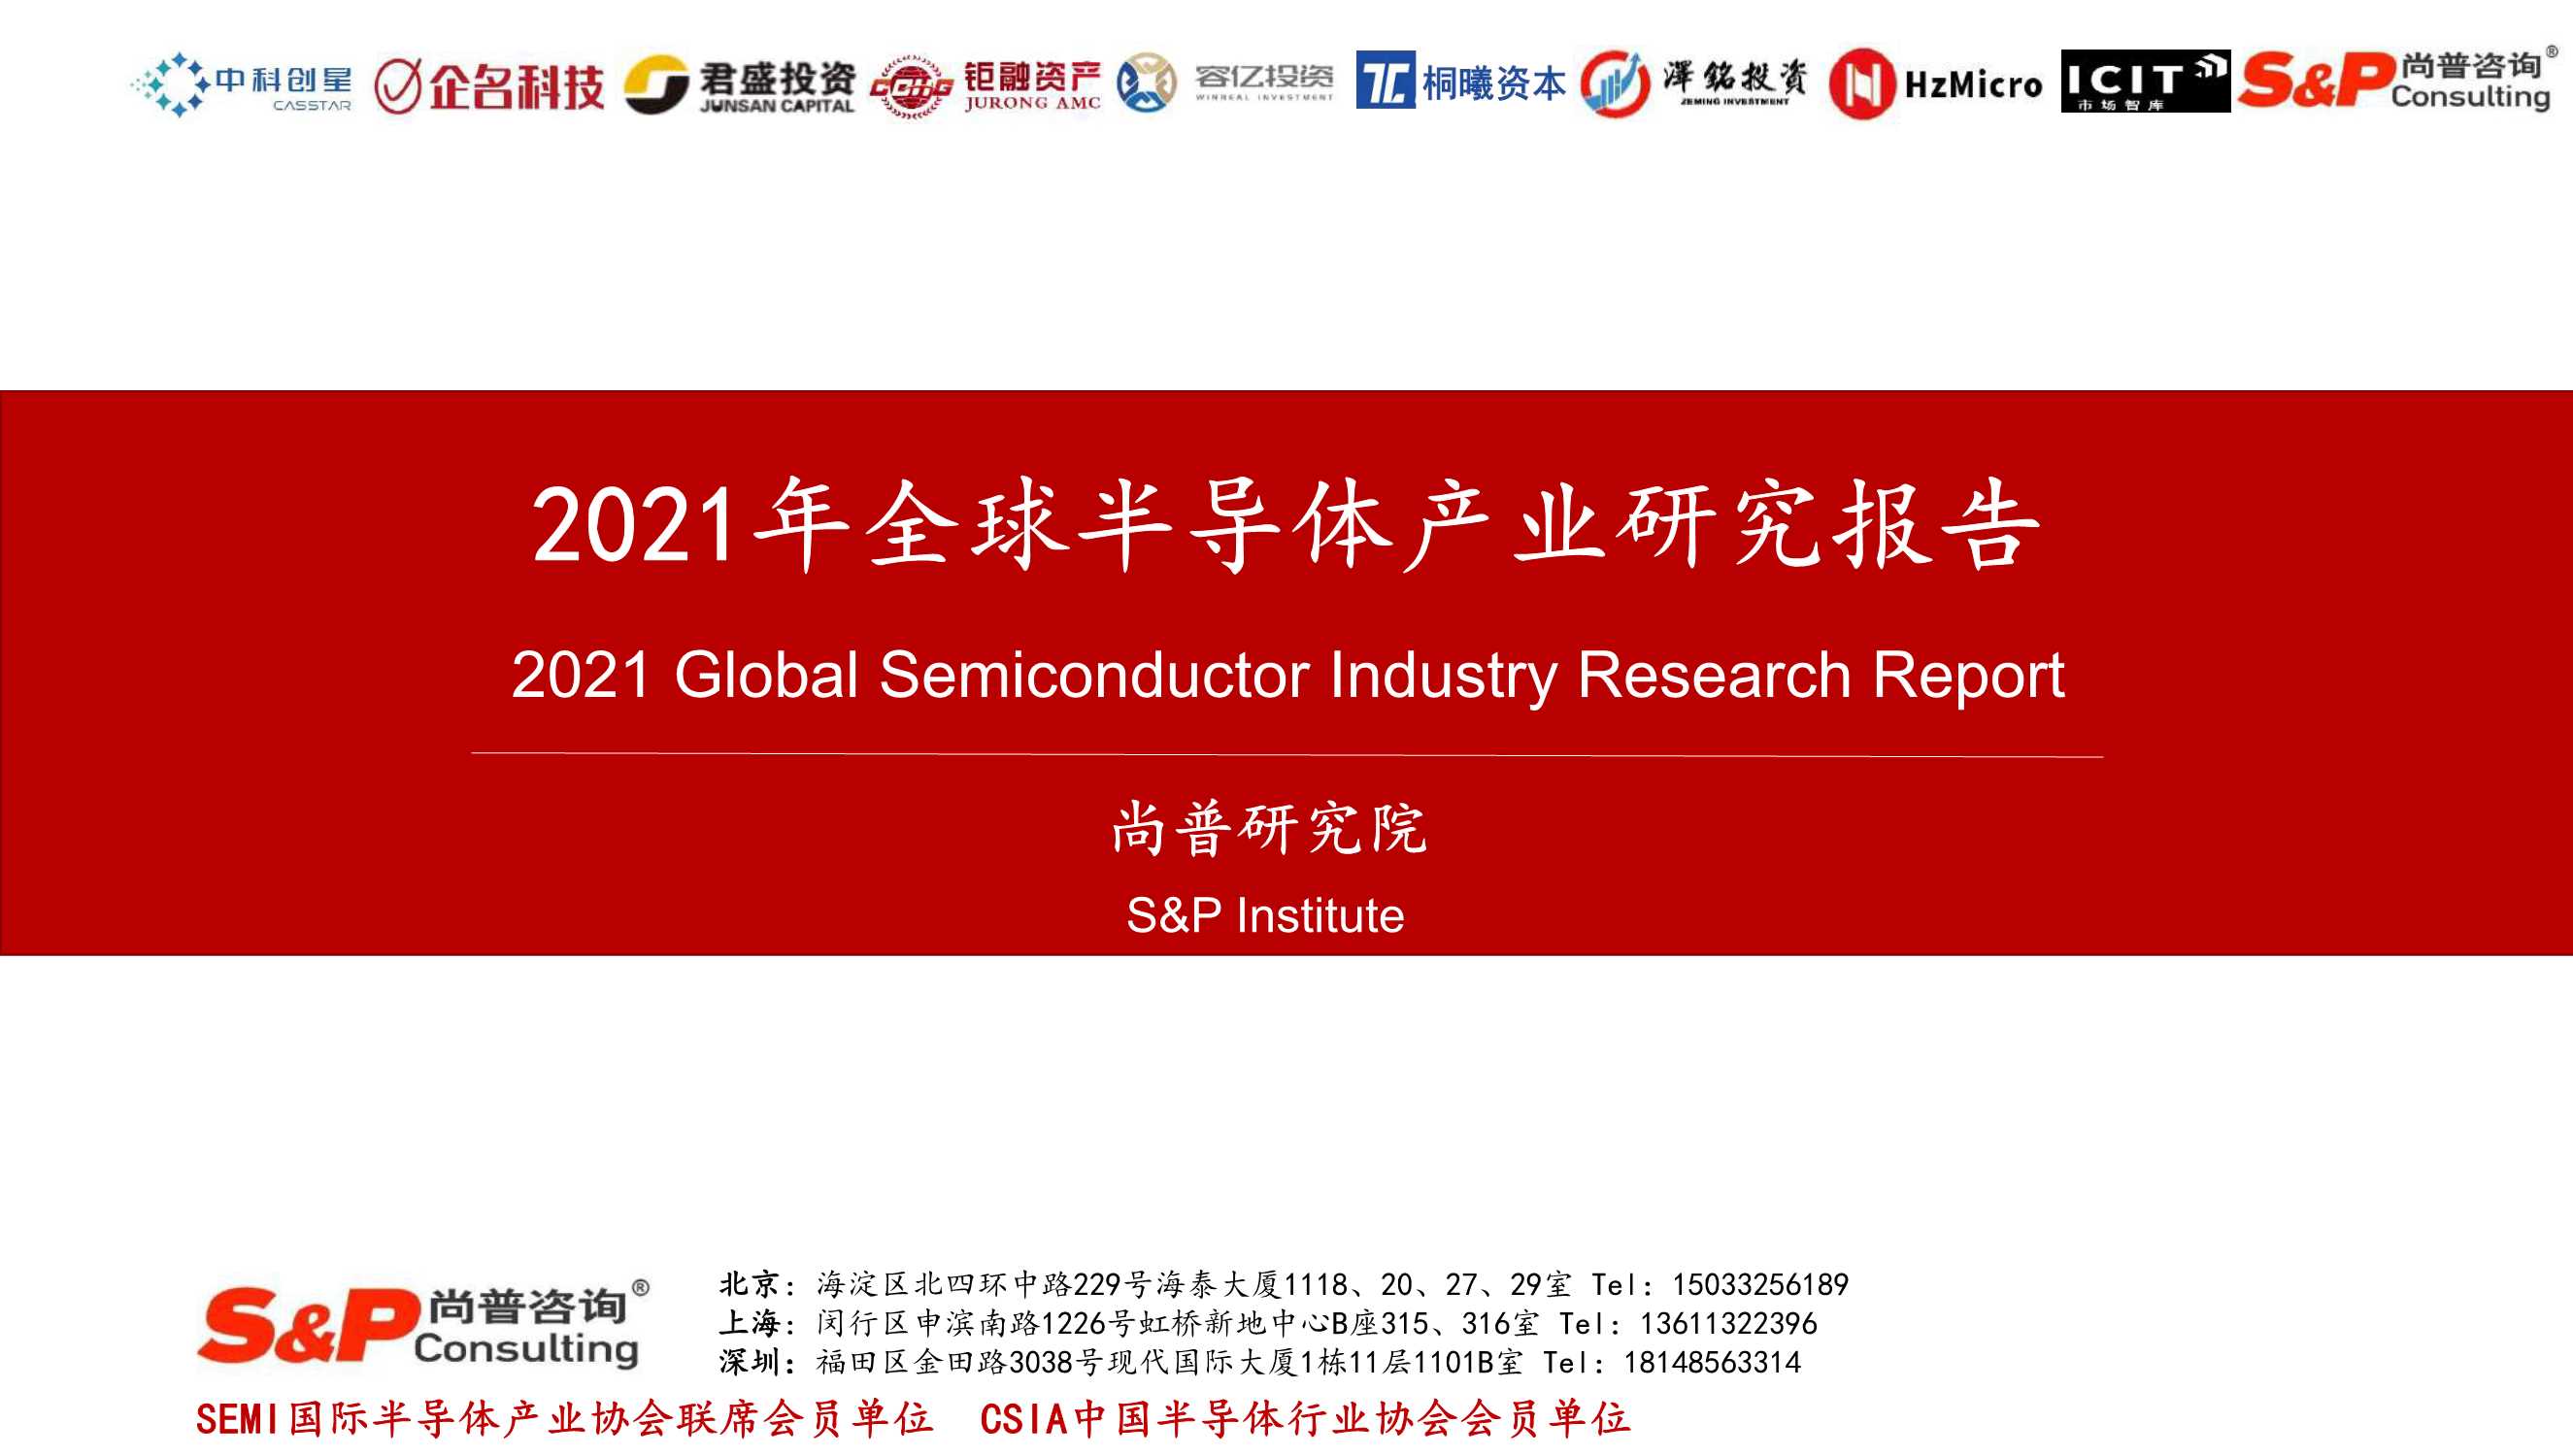 尚普研究院-2021年全球半导体产业研究报告-2021.11-139页